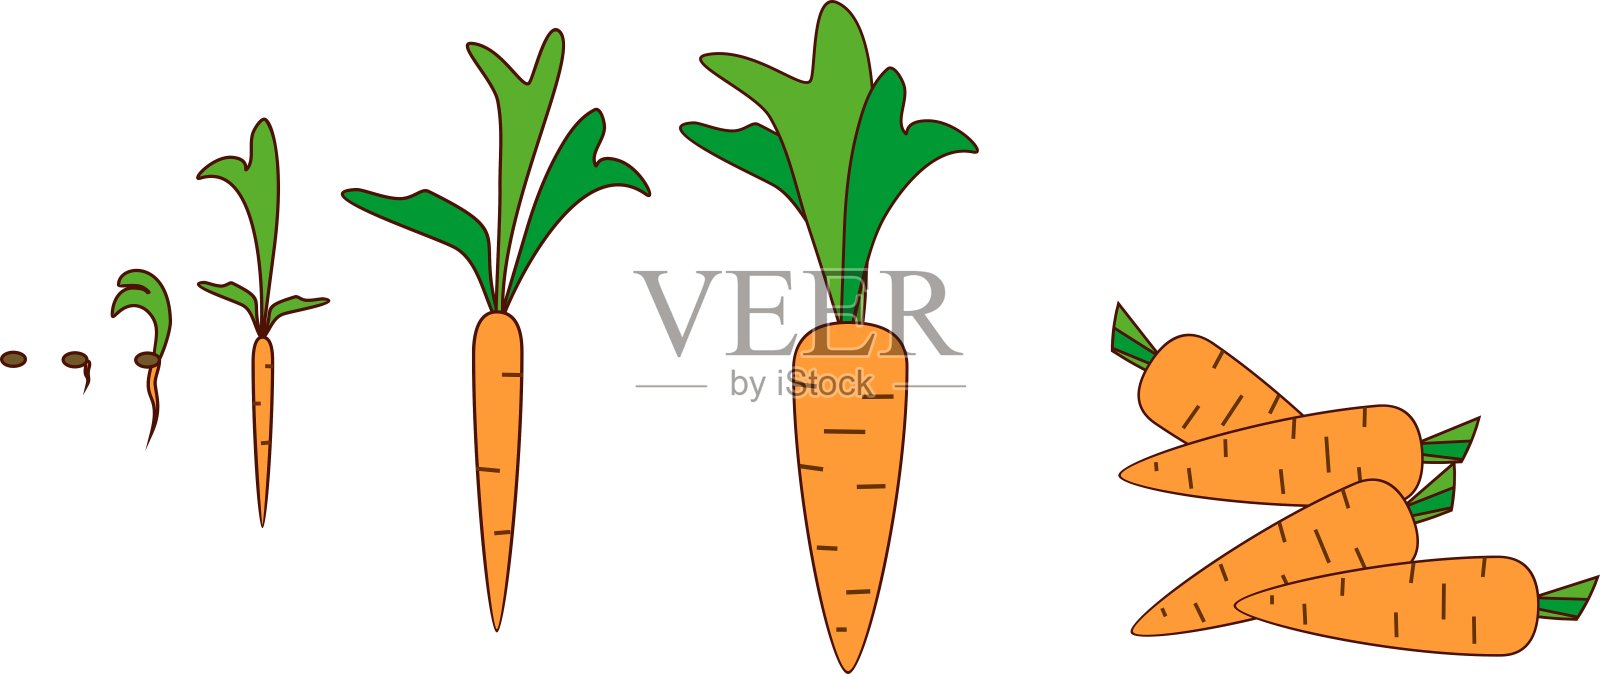 萝卜生长过程卡通图片图片